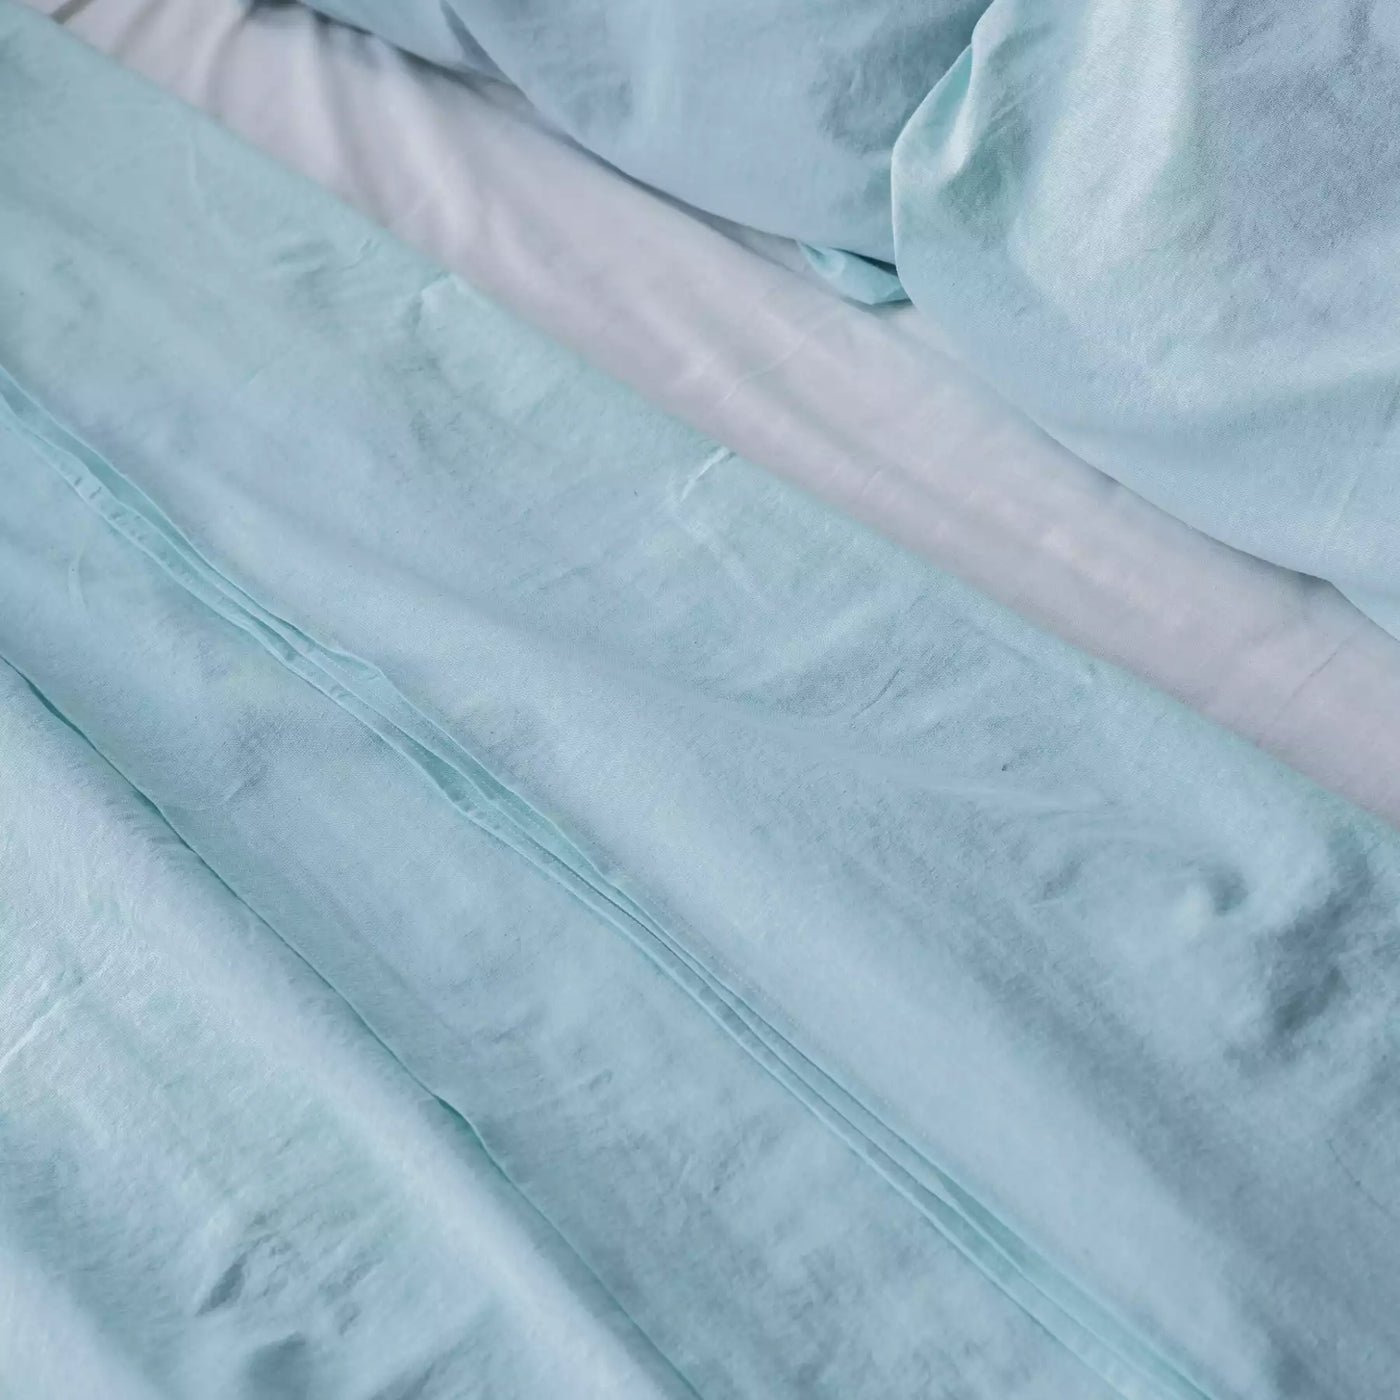 Leinen und Baumwolle Bettwäsche Set mit Bettbezug 200x200 Türkis Melange